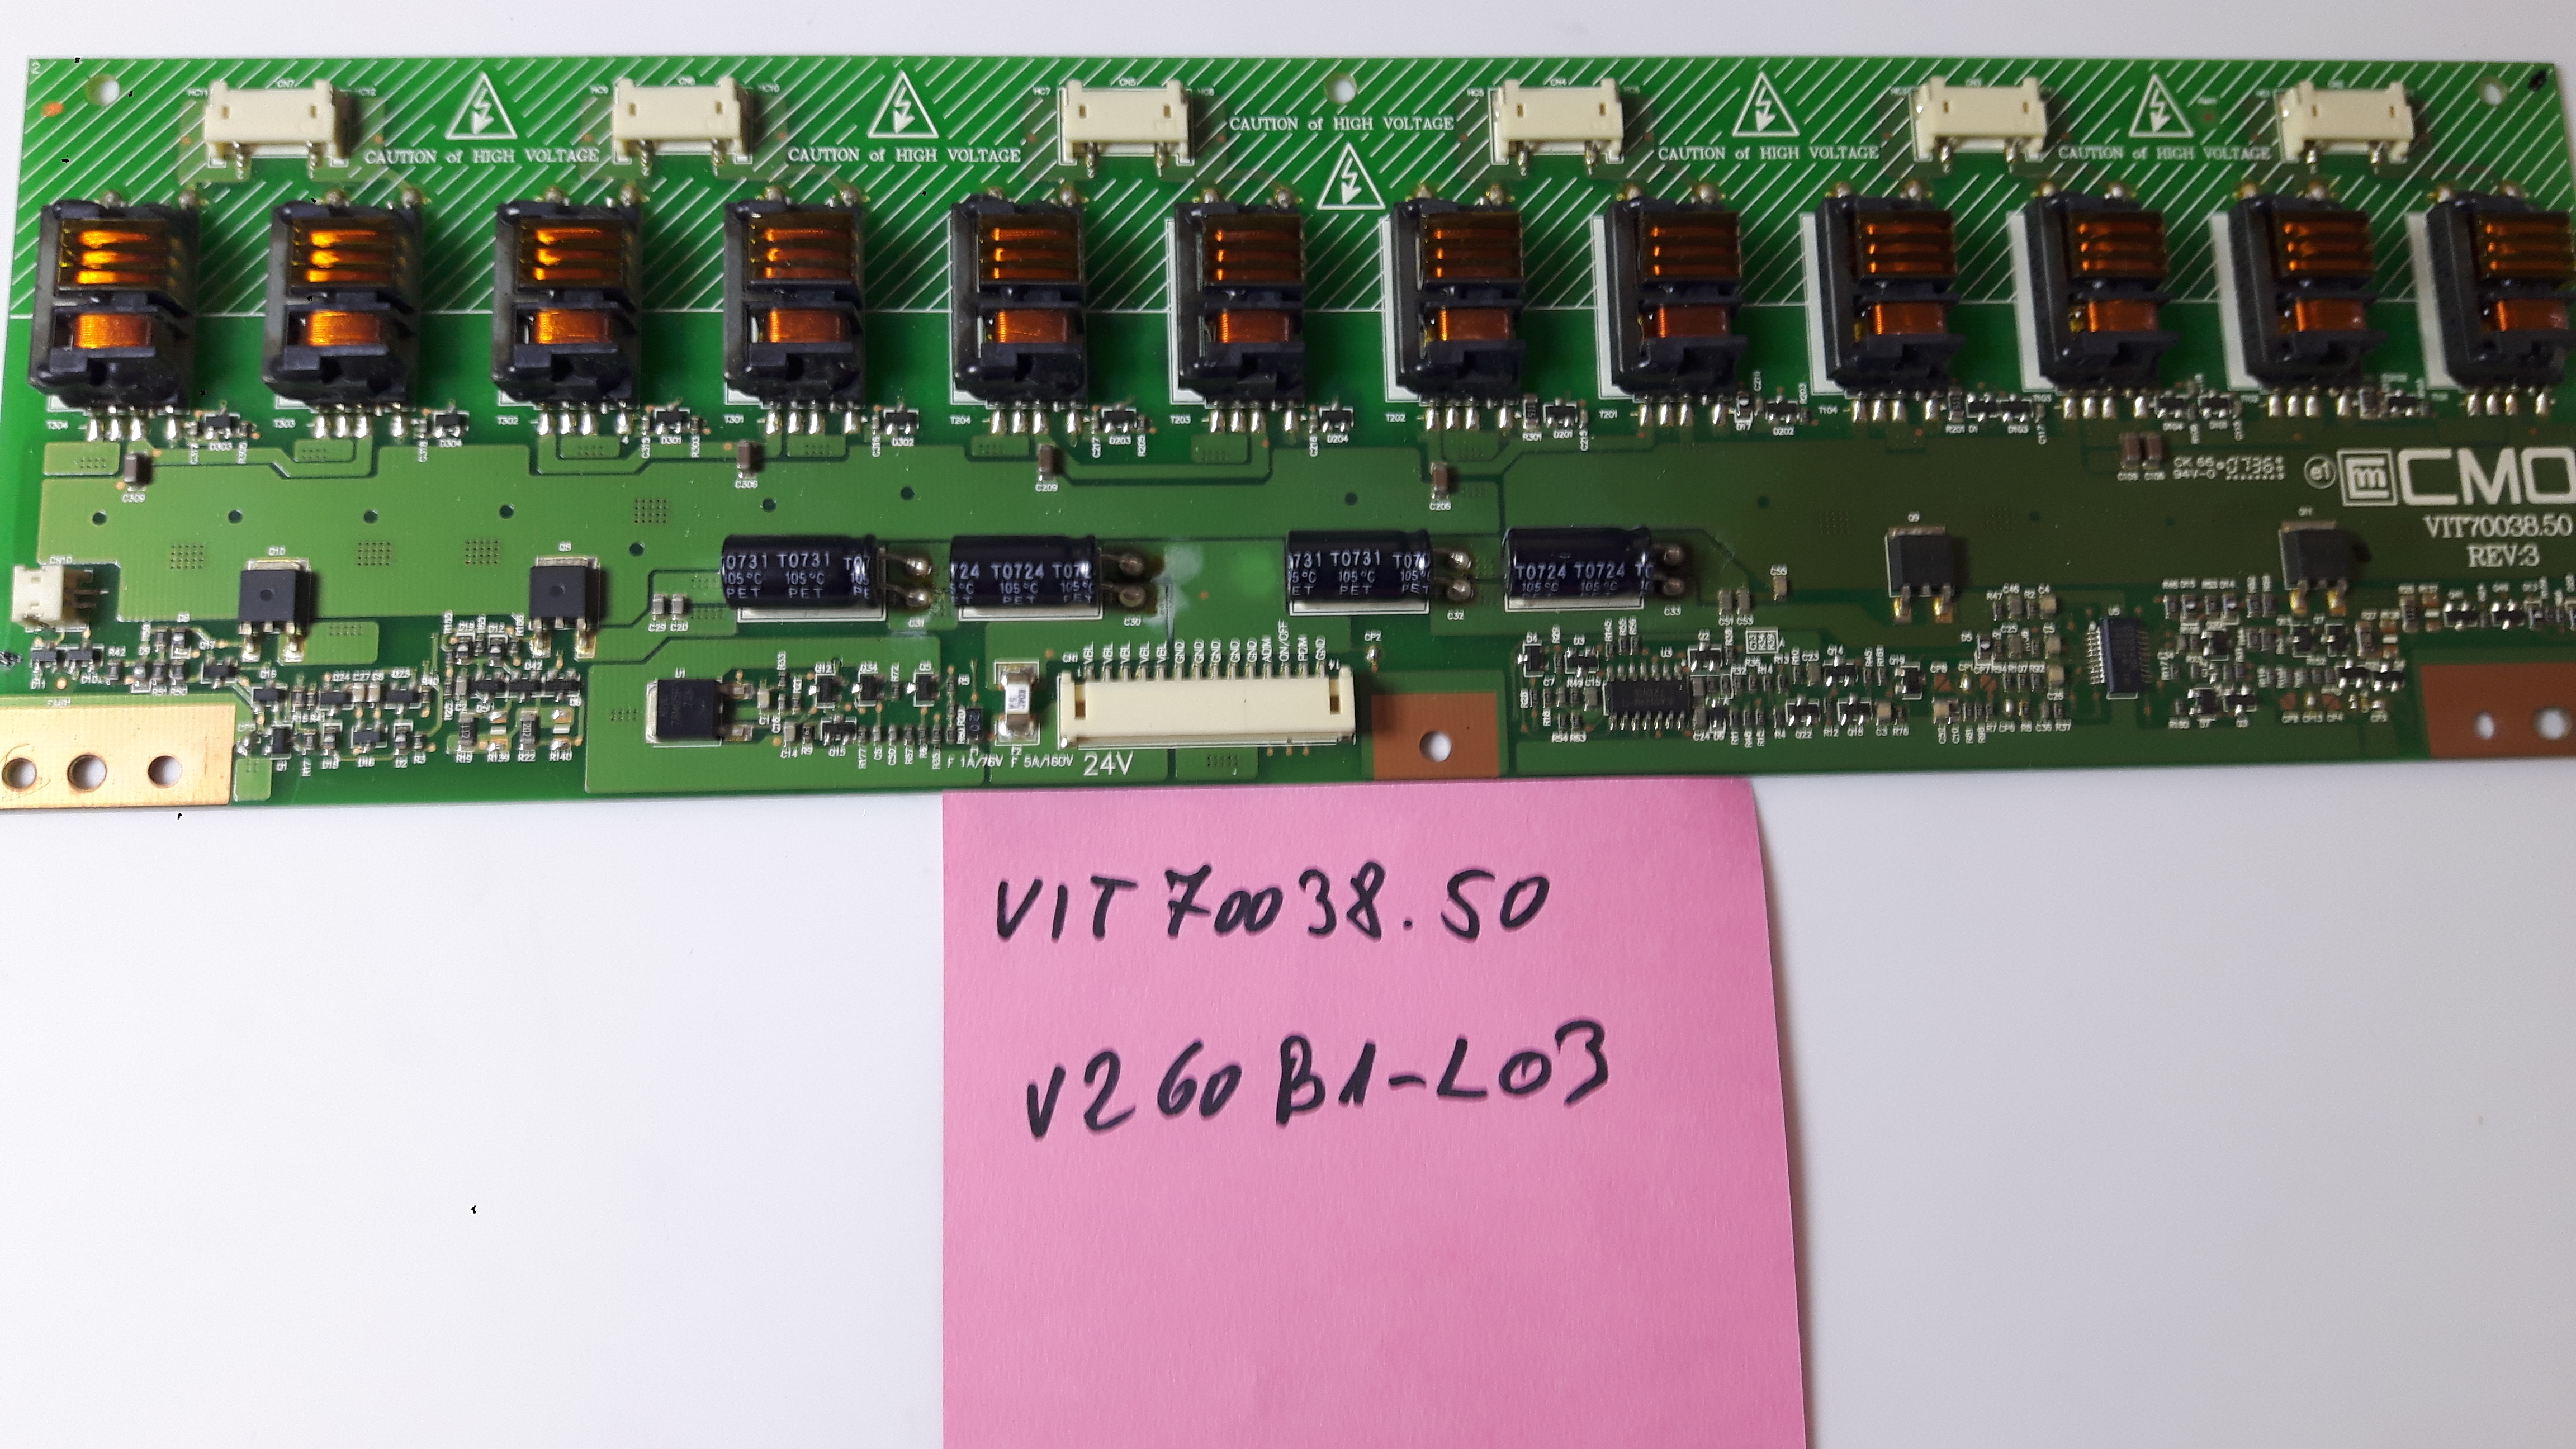 VIT70038.50  V260B1-L03